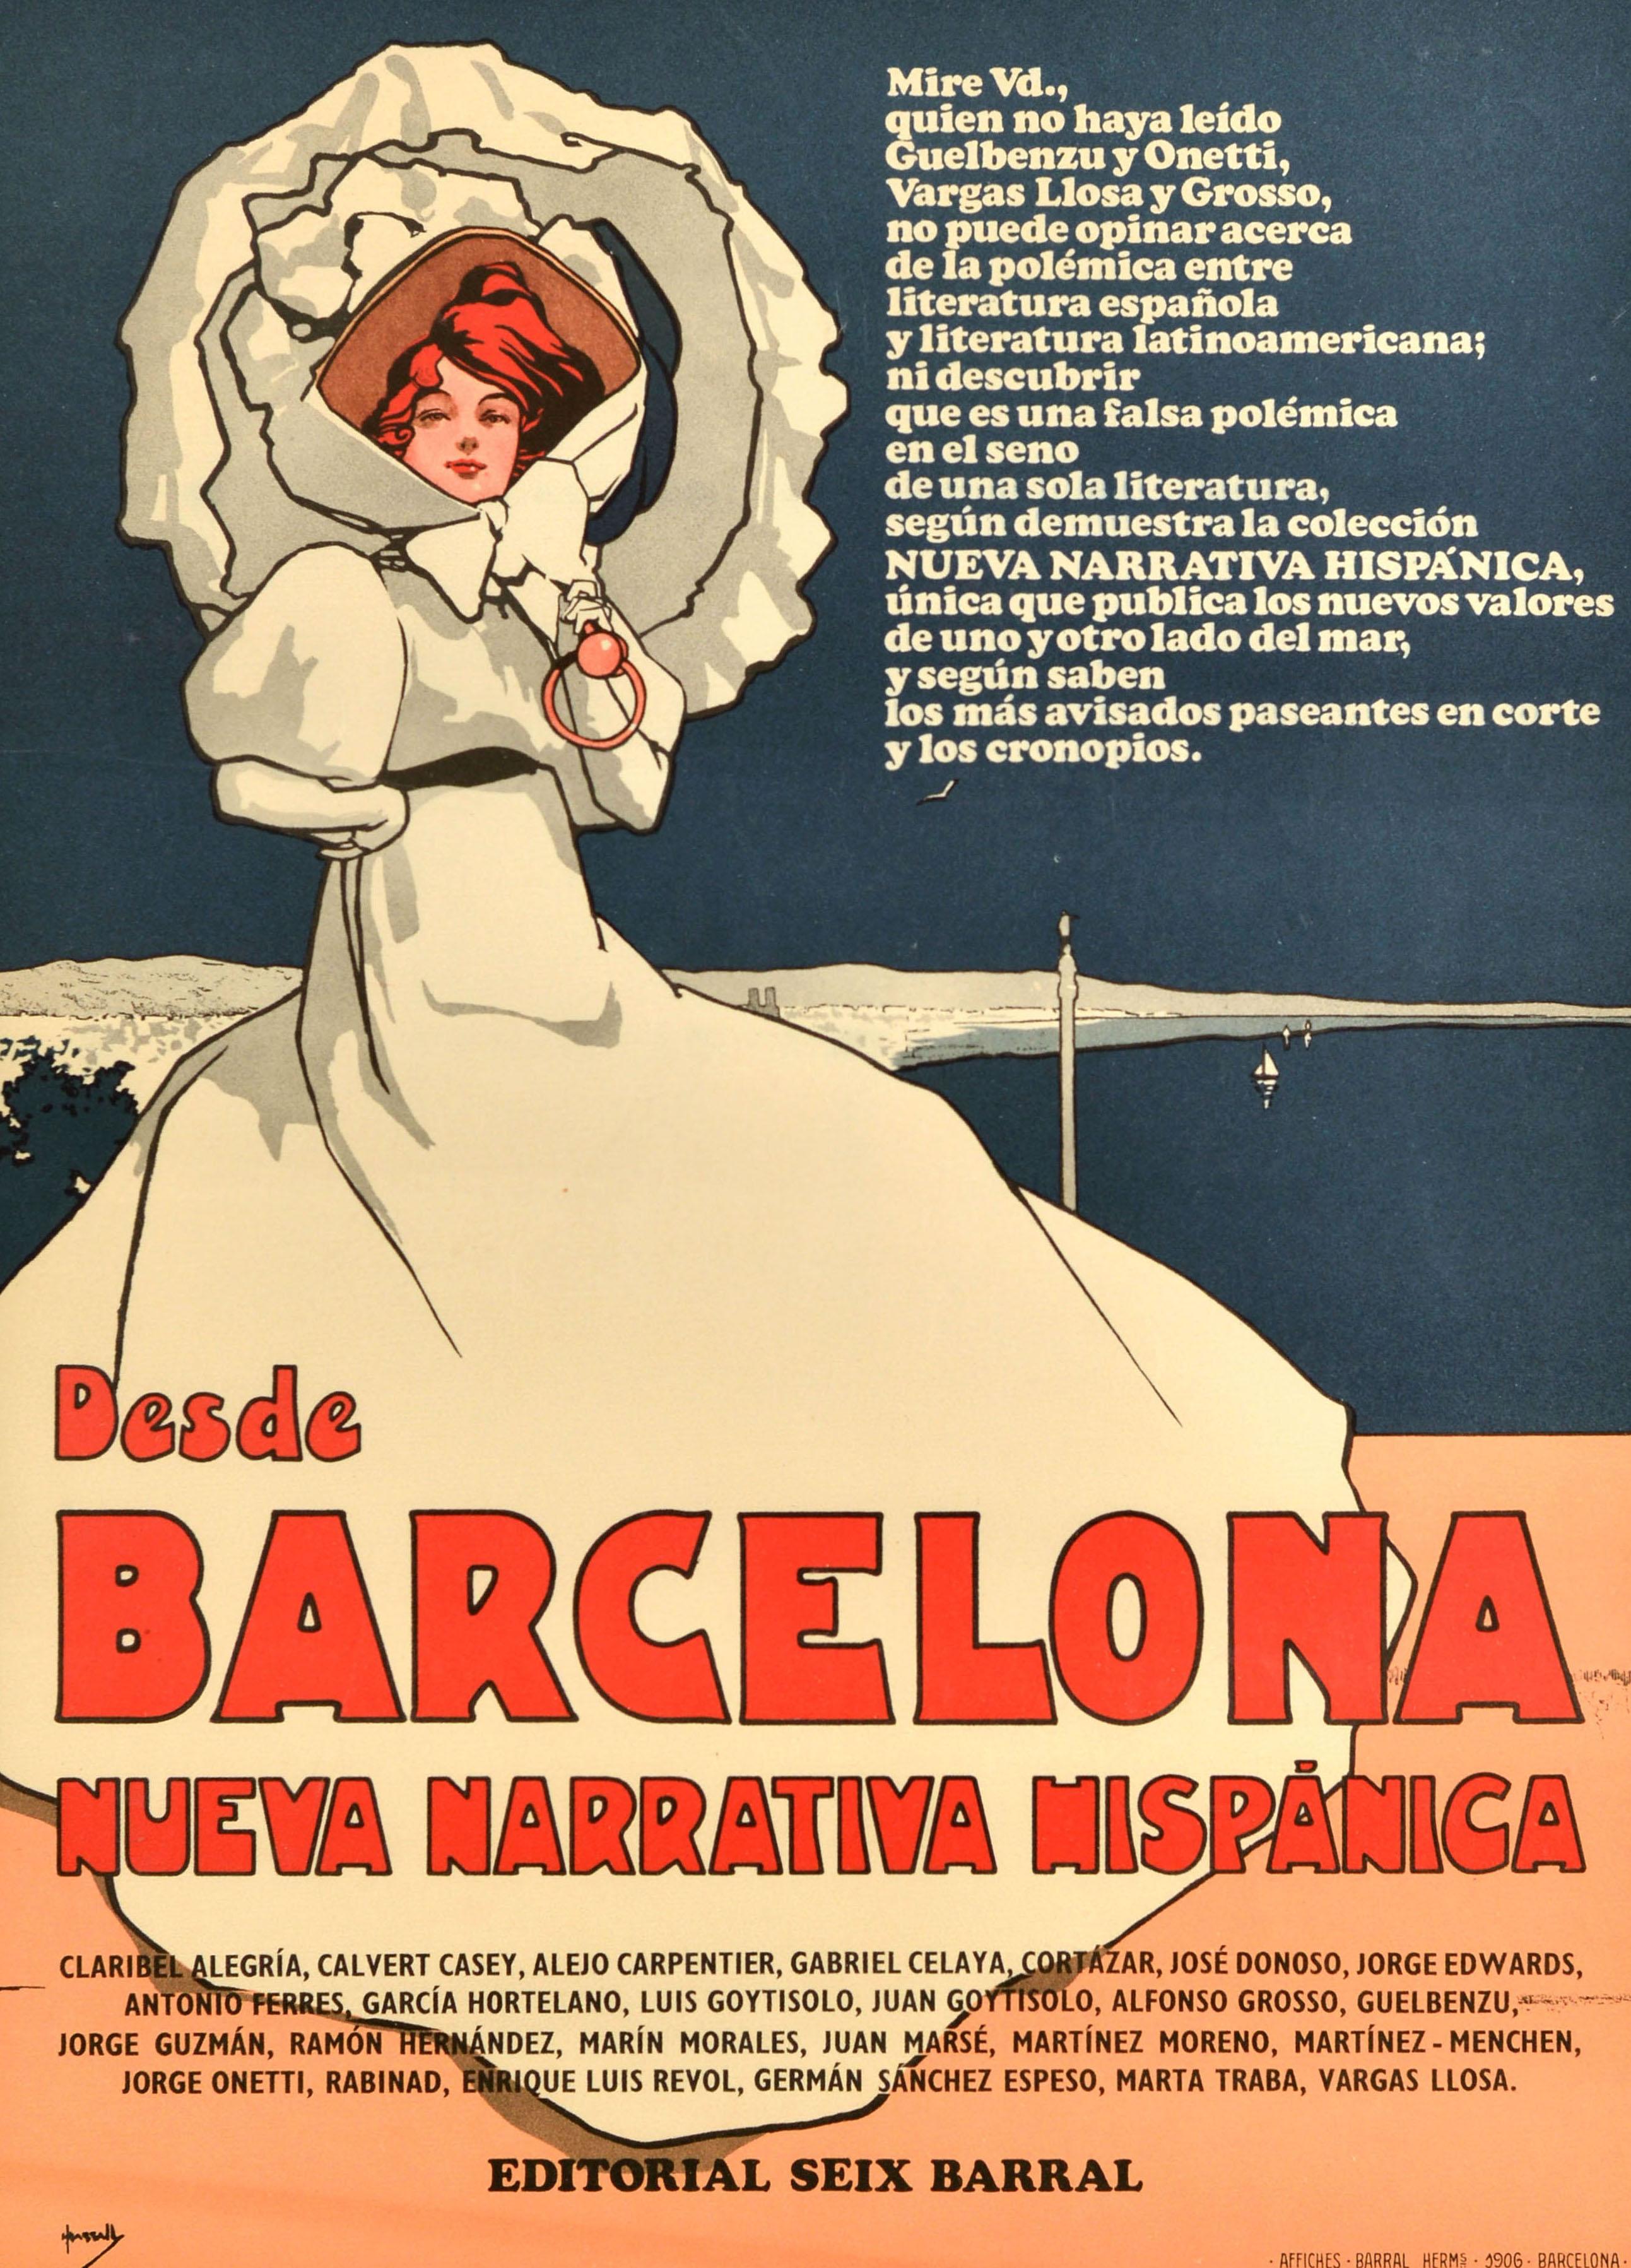 Affiche publicitaire vintage originale reprenant l'œuvre d'art de l'affiche de 1906 illustrée par le célèbre artiste John Hassall (1868-1948) représentant une dame victorienne élégamment vêtue d'une longue robe blanche et d'un chapeau blanc avec un